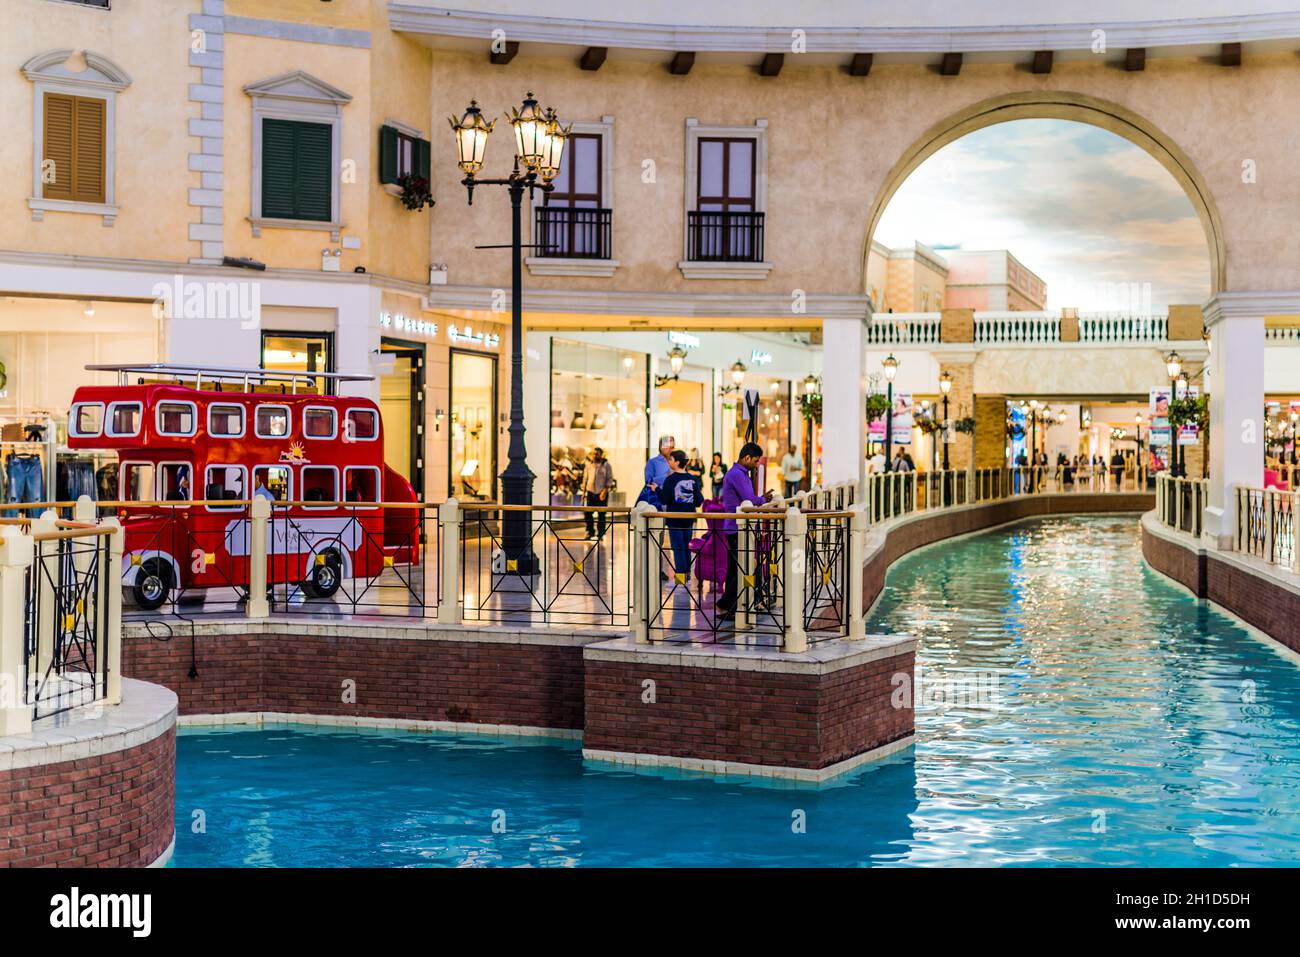 DOHA, KATAR - 26. FEB 2020: Das Innere der Villaggio Mall, einem Einkaufszentrum in der Aspire Zone im westlichen Ende von Doha, Katar Stockfoto